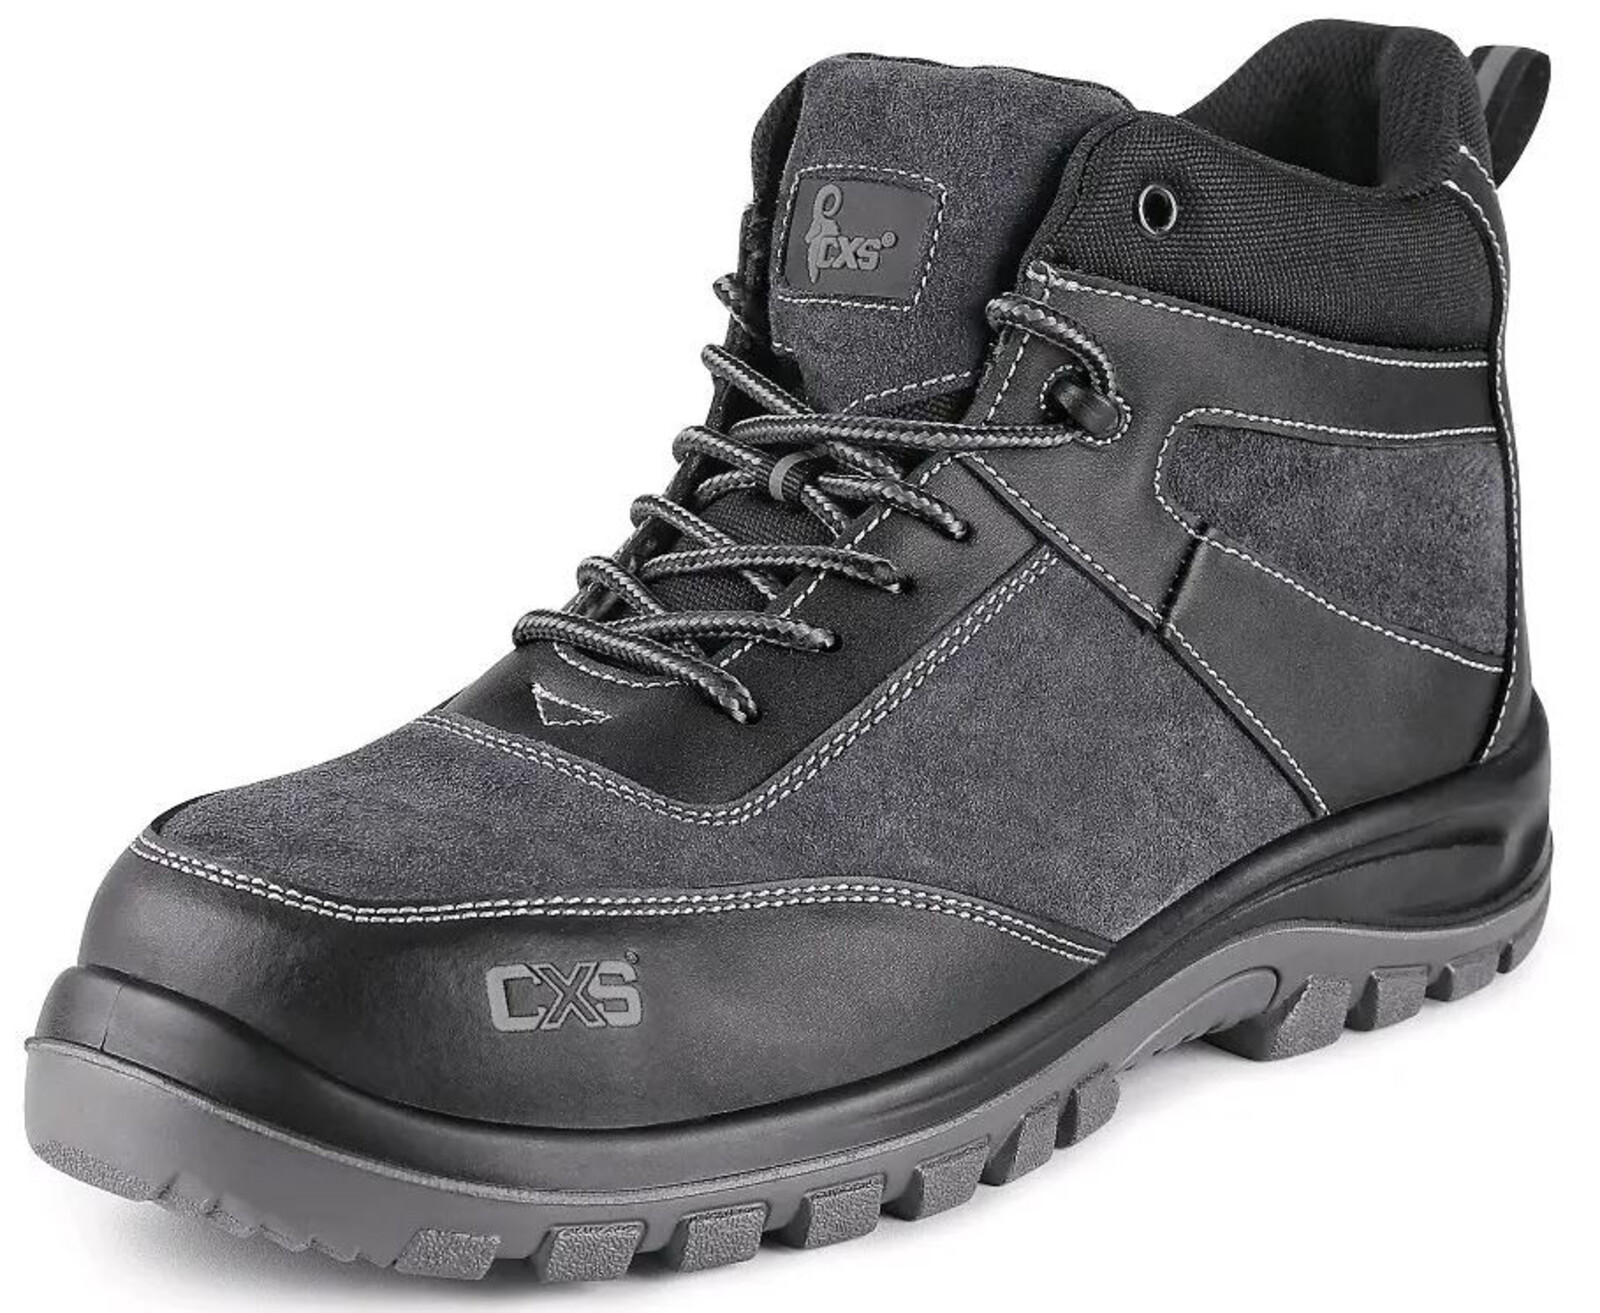 Pracovná členková obuv CXS Profit Win O1 FO SRC - veľkosť: 37, farba: čierna/sivá